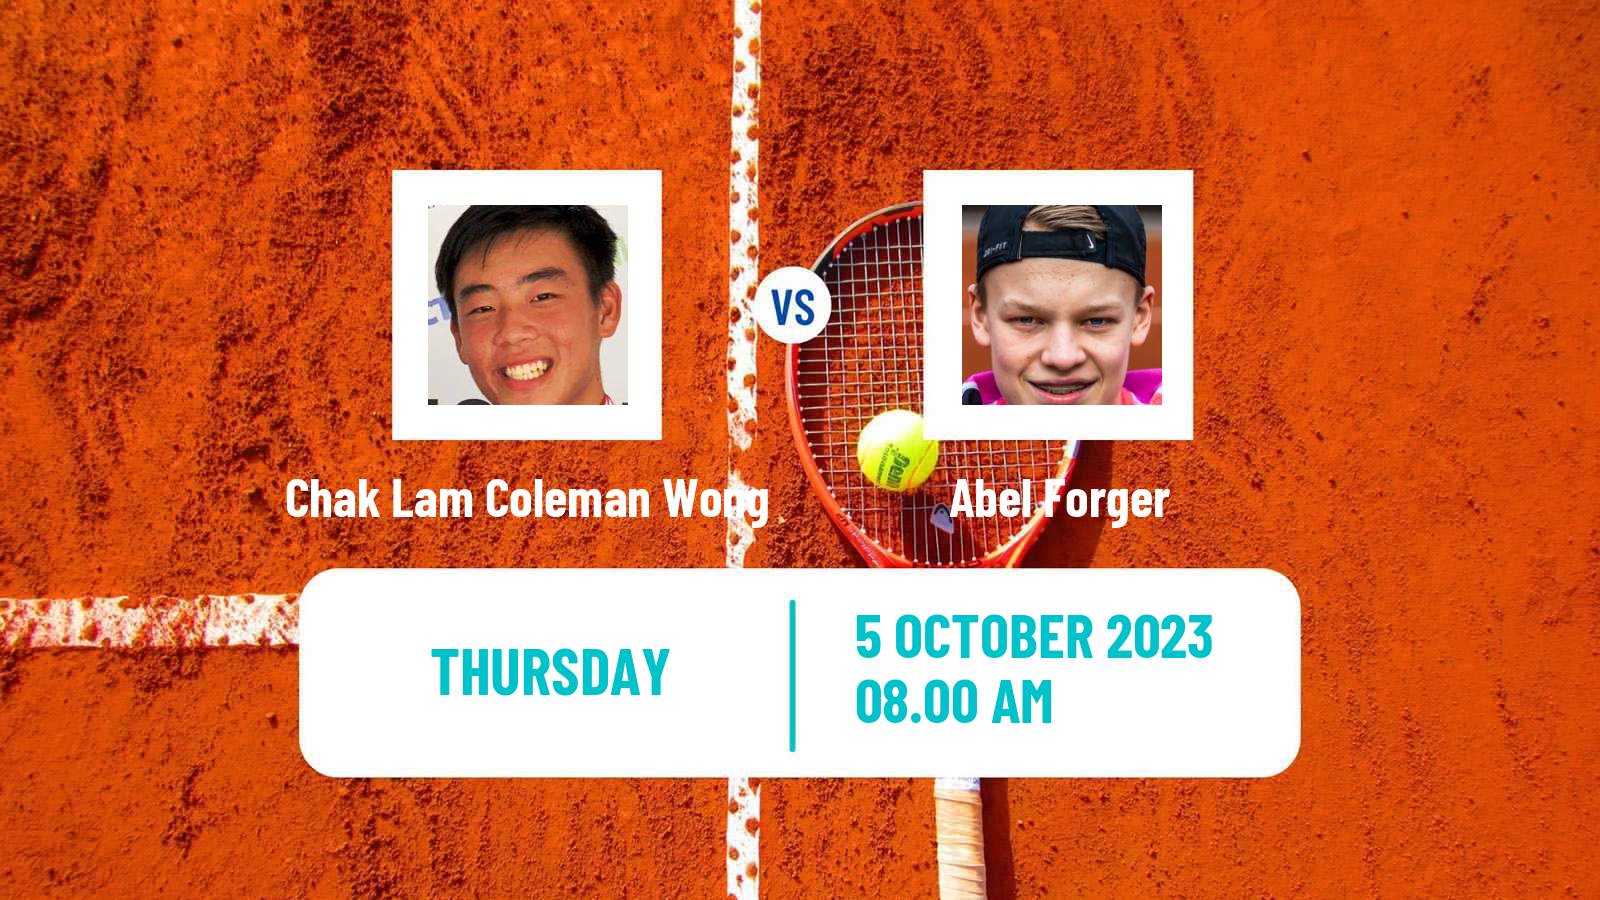 Tennis ITF M15 Doha 2 Men Chak Lam Coleman Wong - Abel Forger